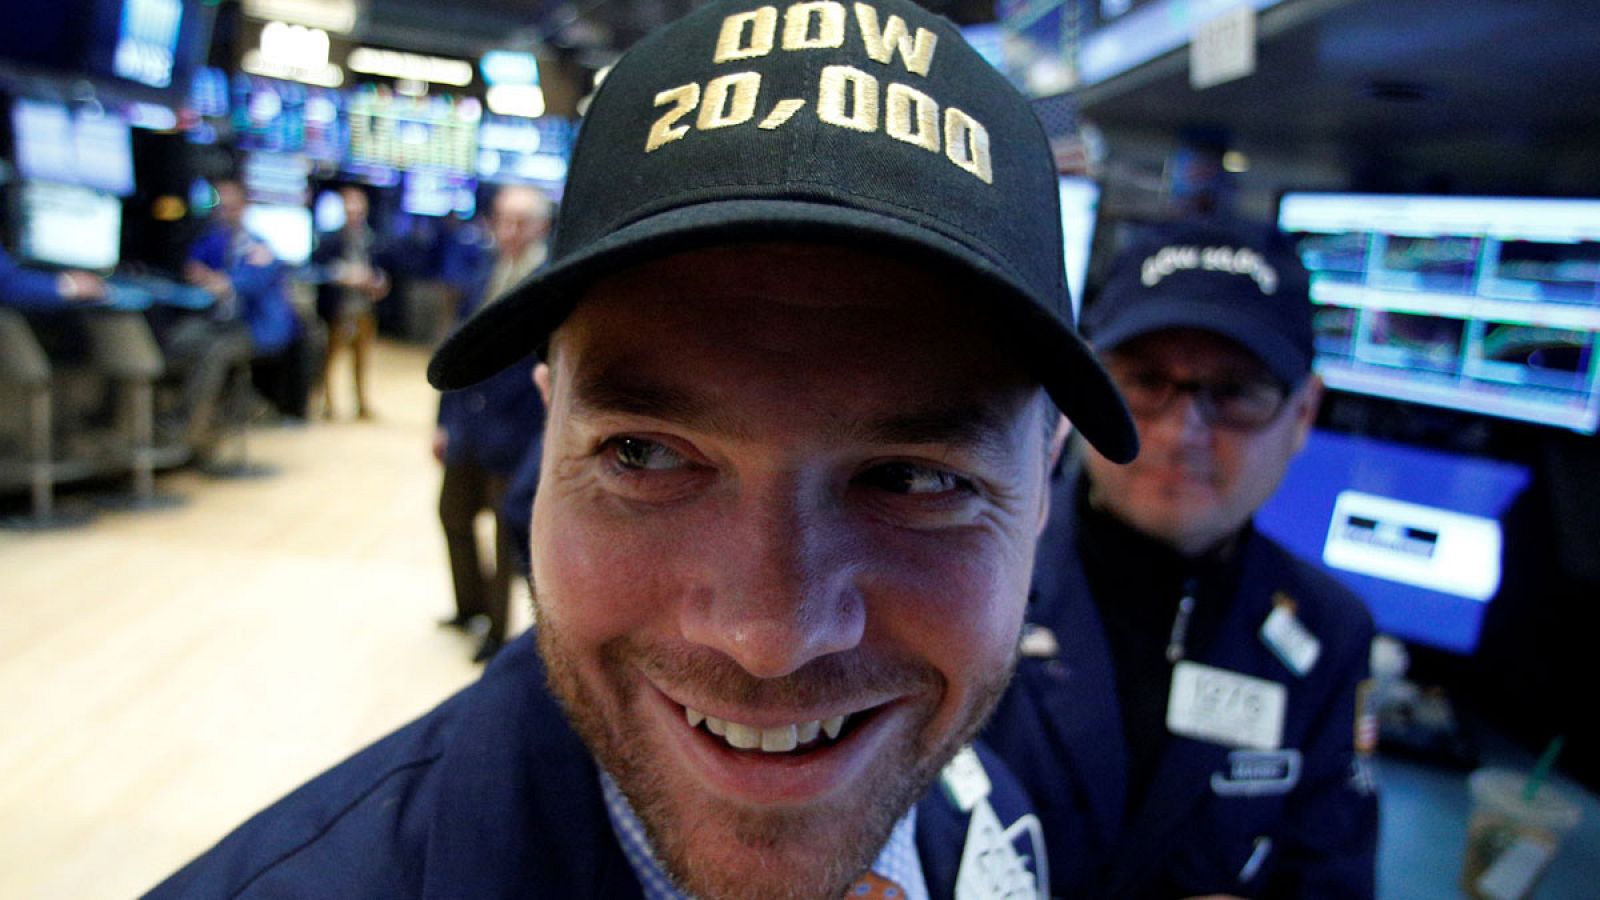 Los trabajadores de la bolsa de Nueva York lucen gorras con la cifra récord de 20.000 puntos alcanzada por el Dow Jones.